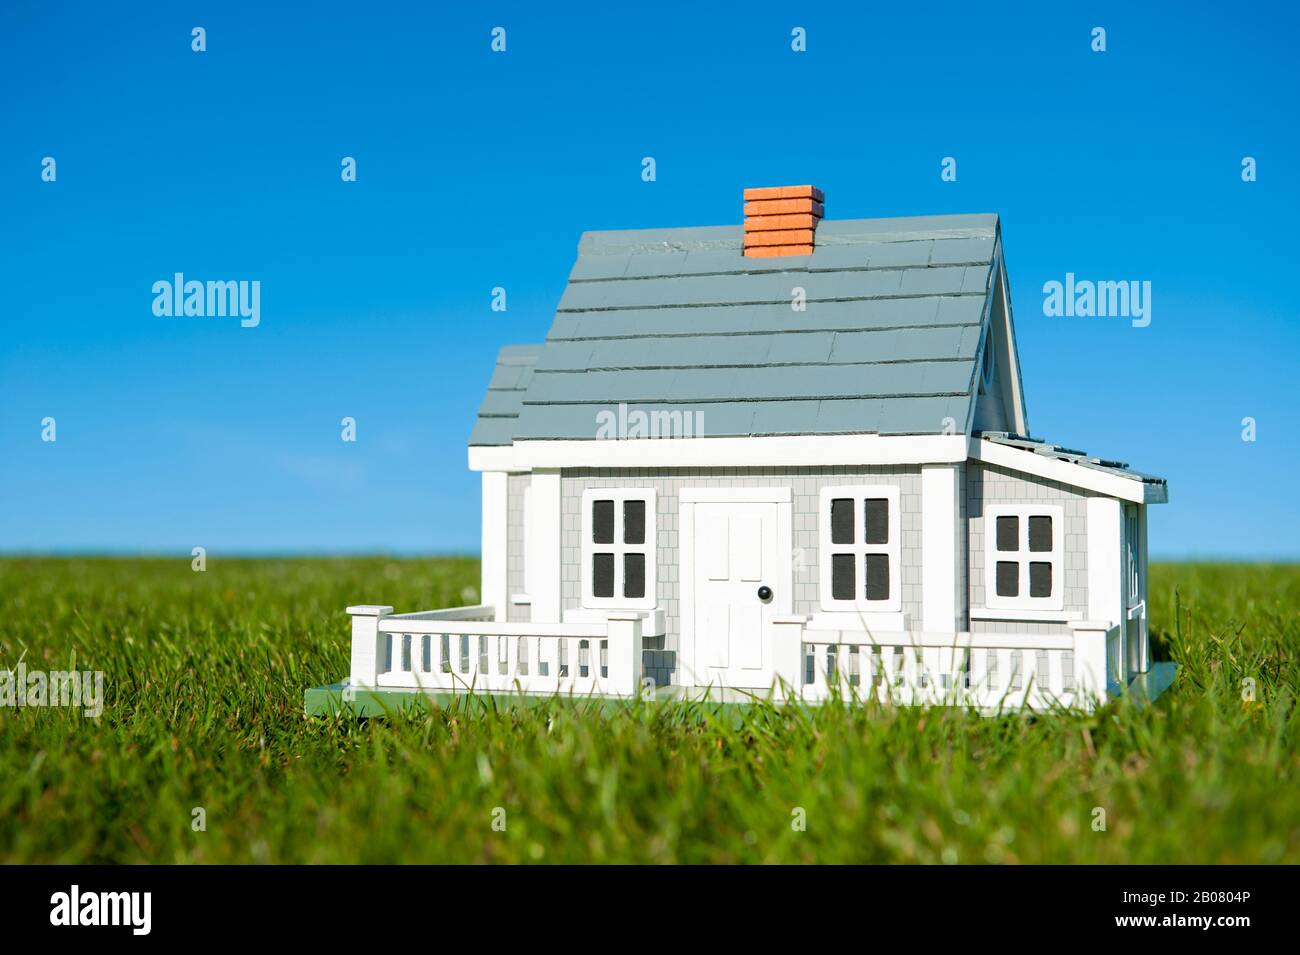 Maison miniature avec clôture de piquetage blanche debout dans une pelouse verte luxuriante en face d'un horizon bleu ciel Banque D'Images